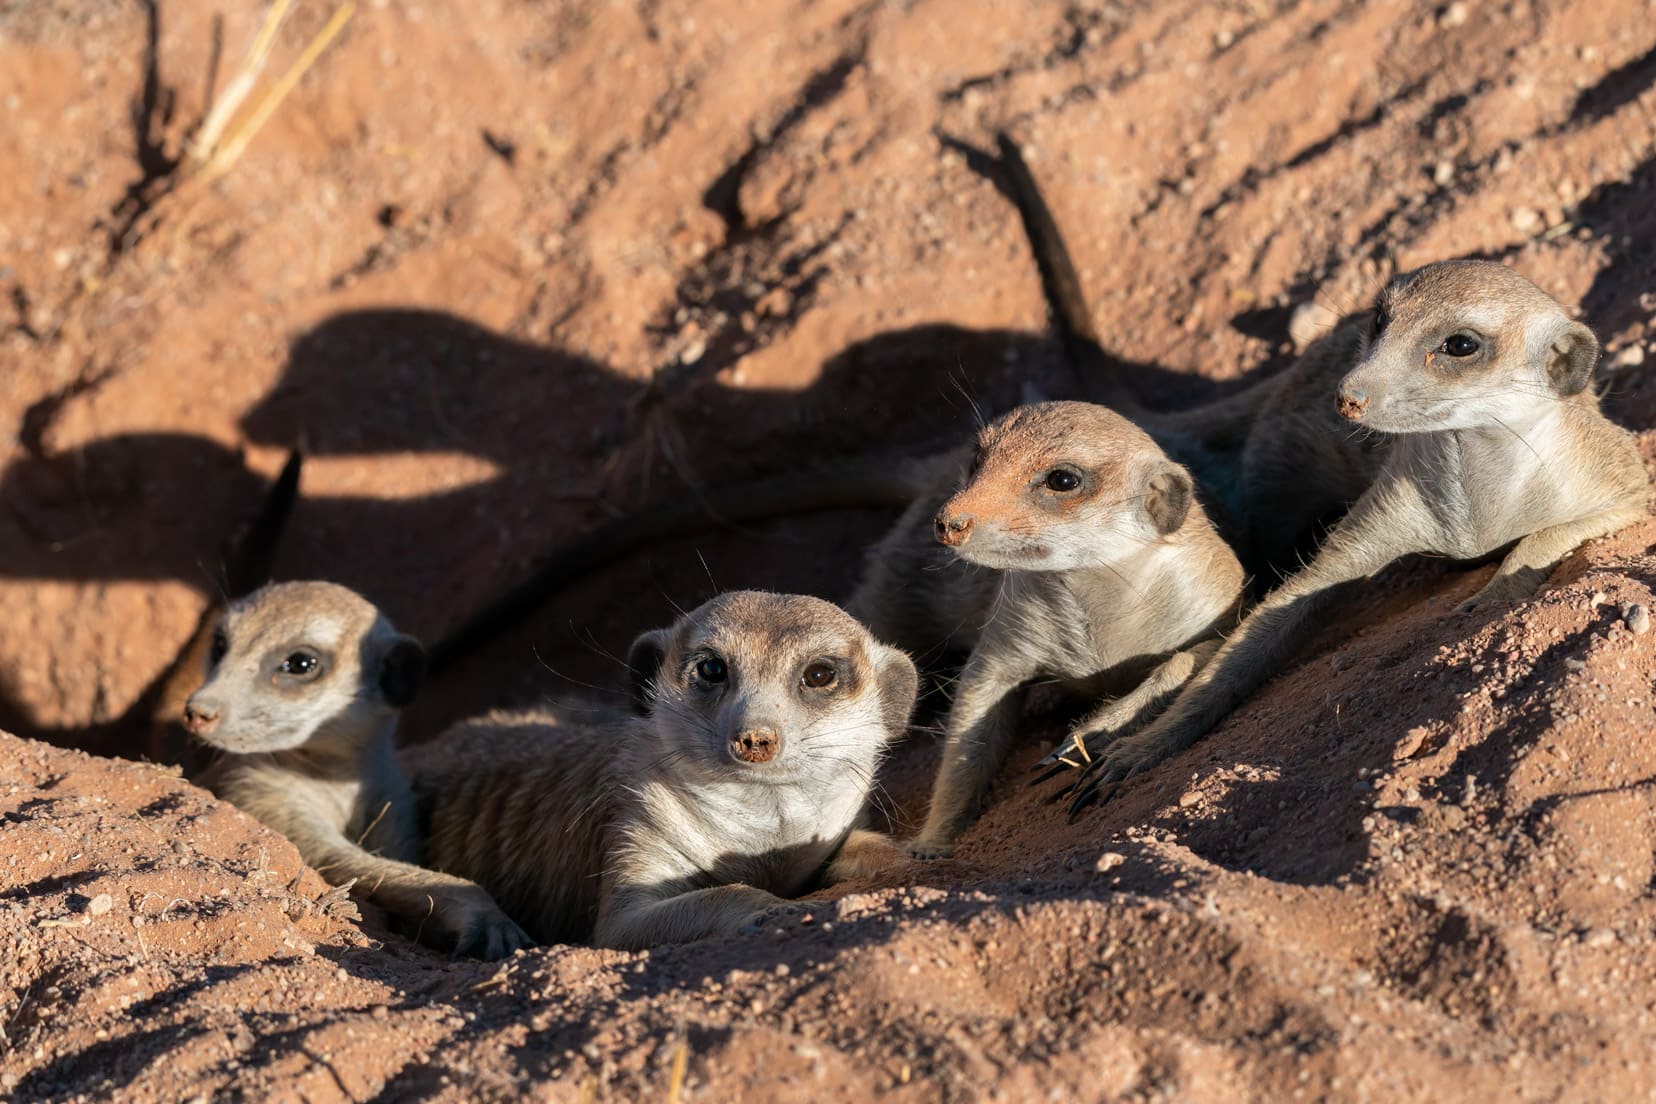 4-meerkats-in-burrow-